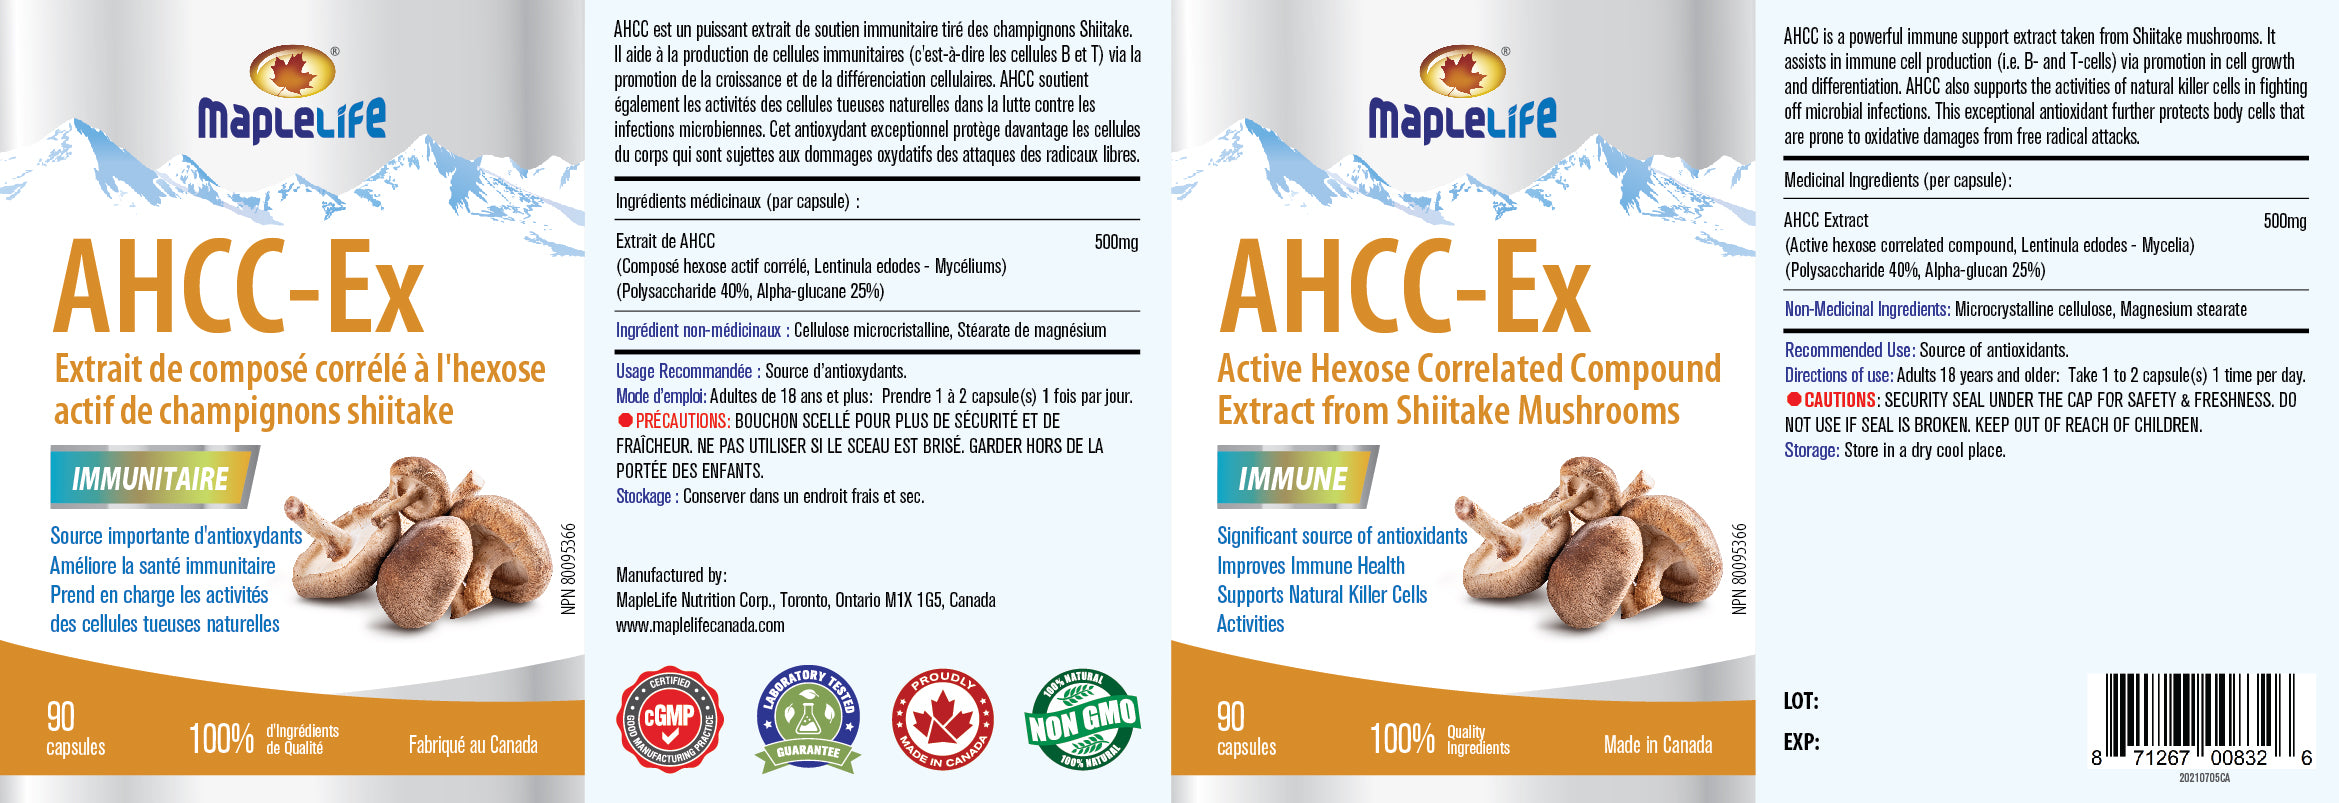 AHCC-Ex 90 Capsules